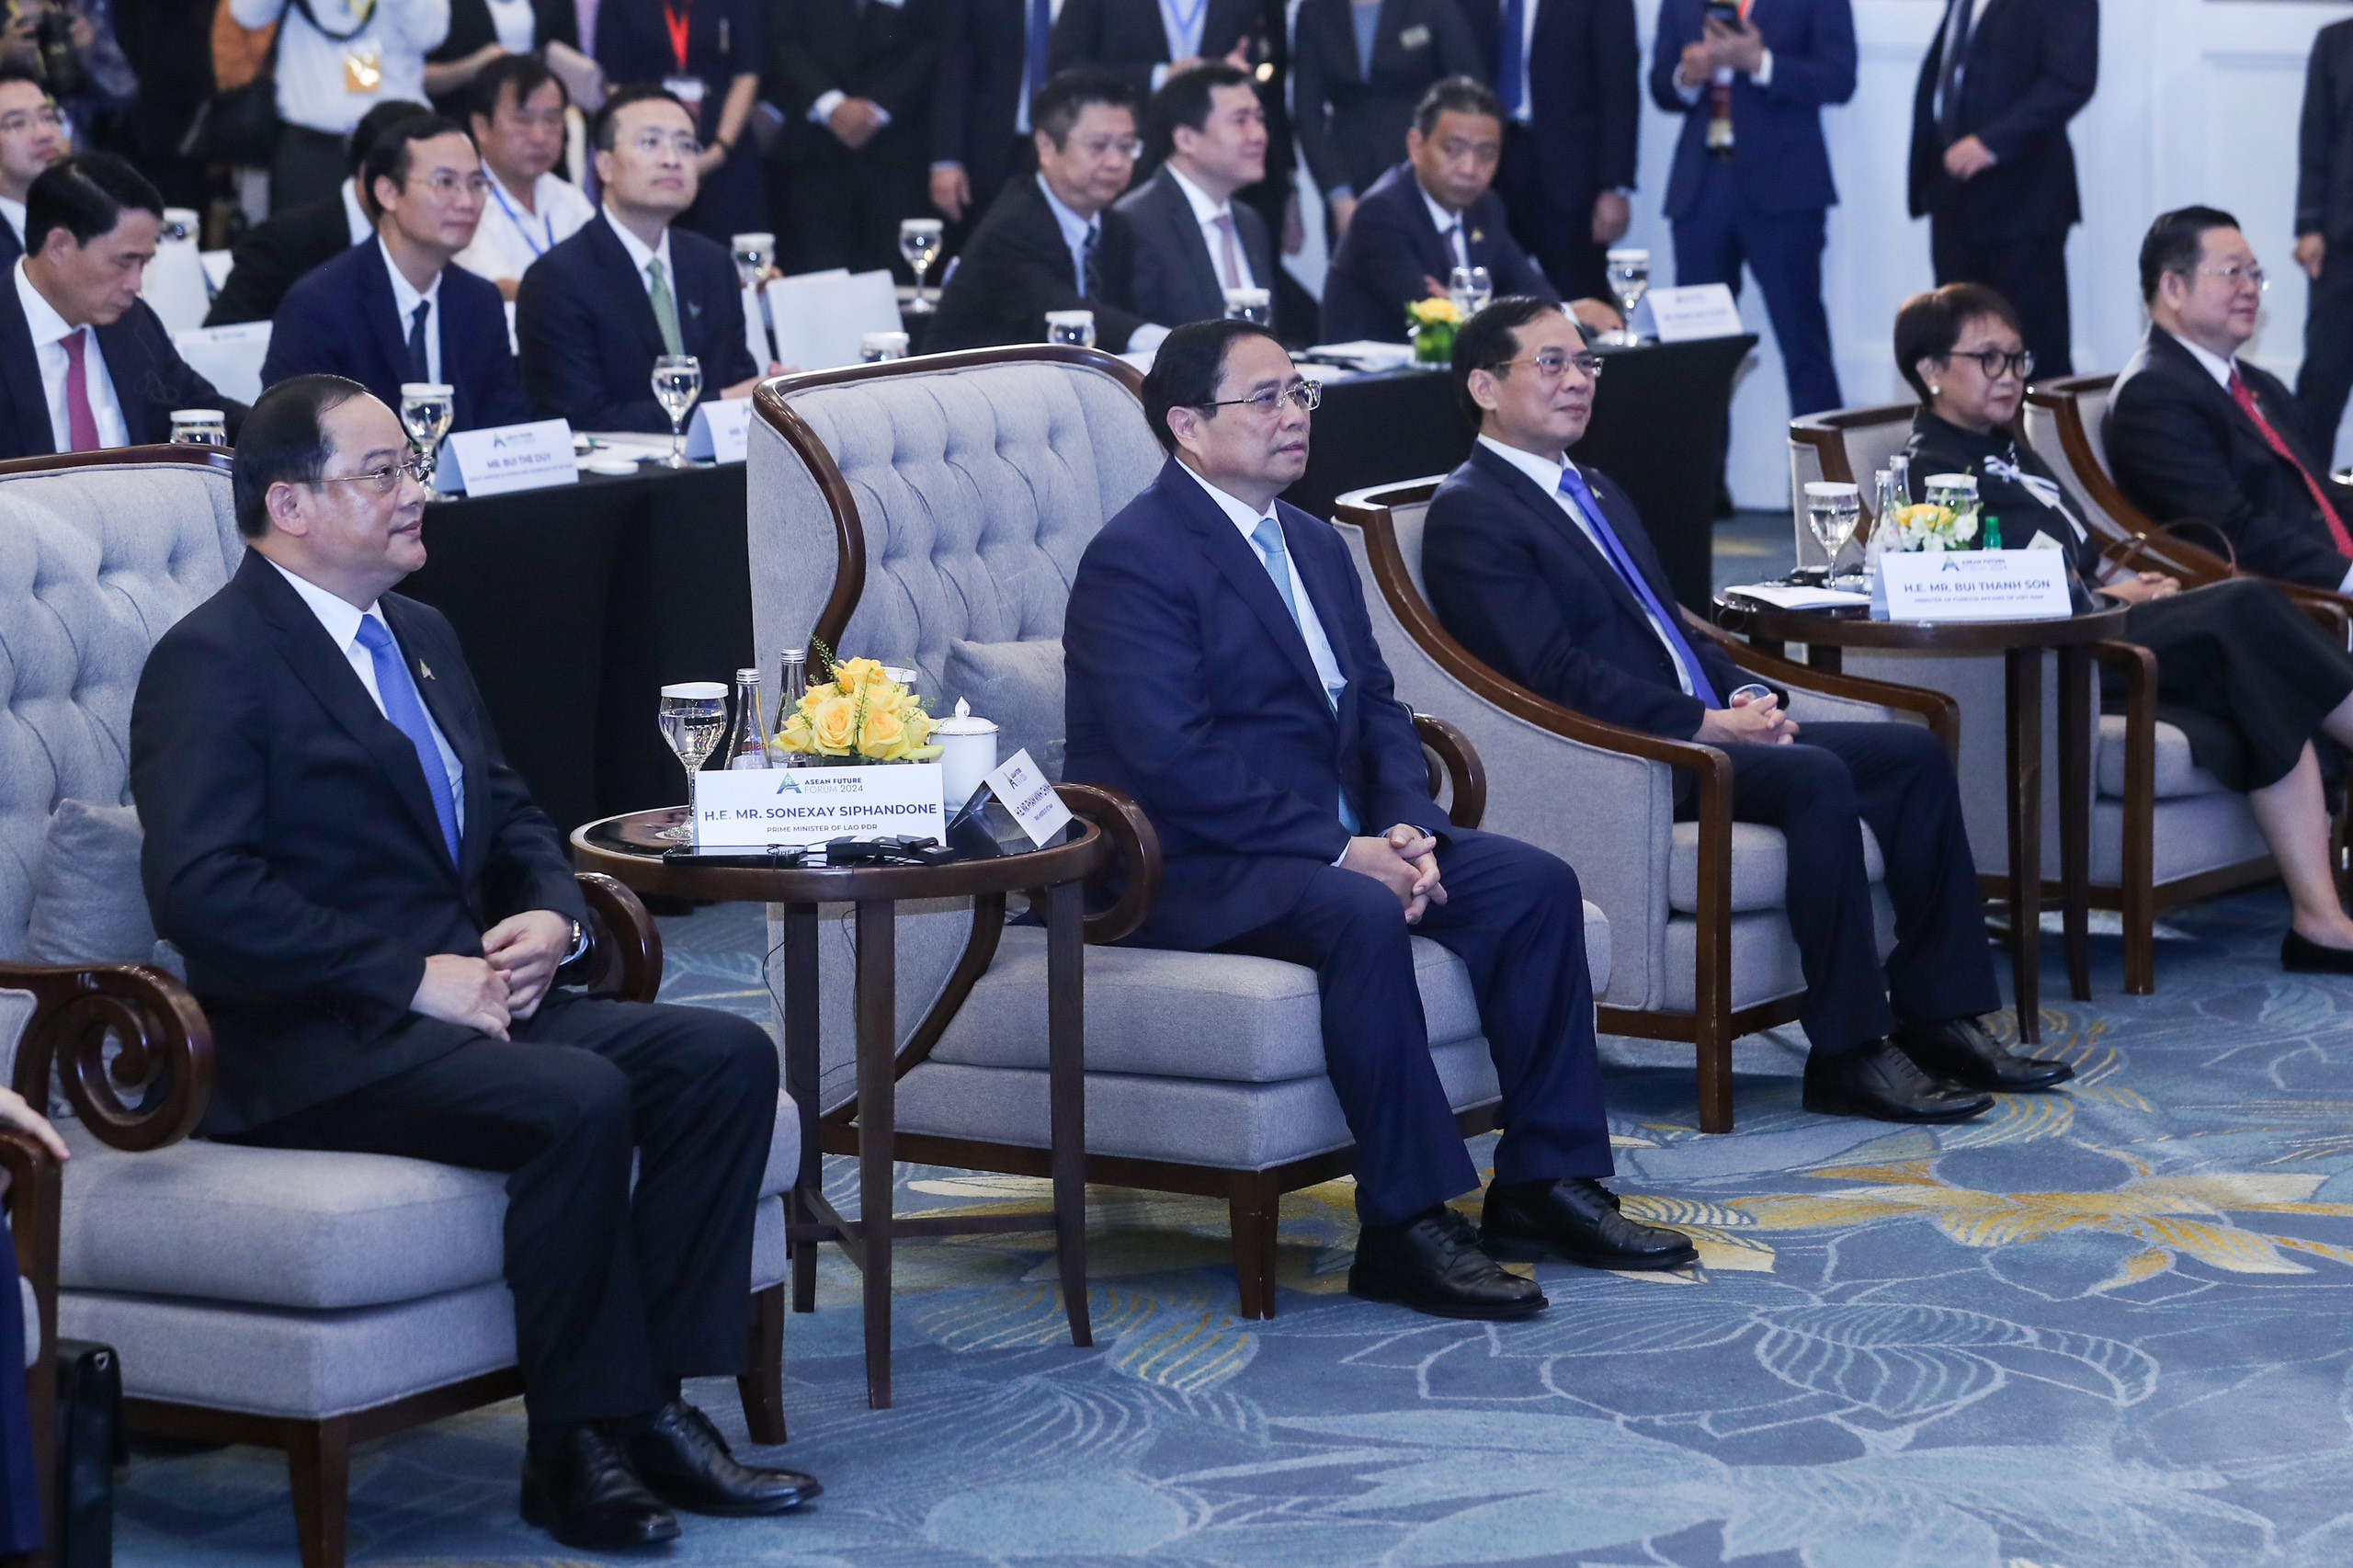 Thủ tướng: Việt Nam sẽ cùng ASEAN viết tiếp câu chuyện thành công- Ảnh 2.